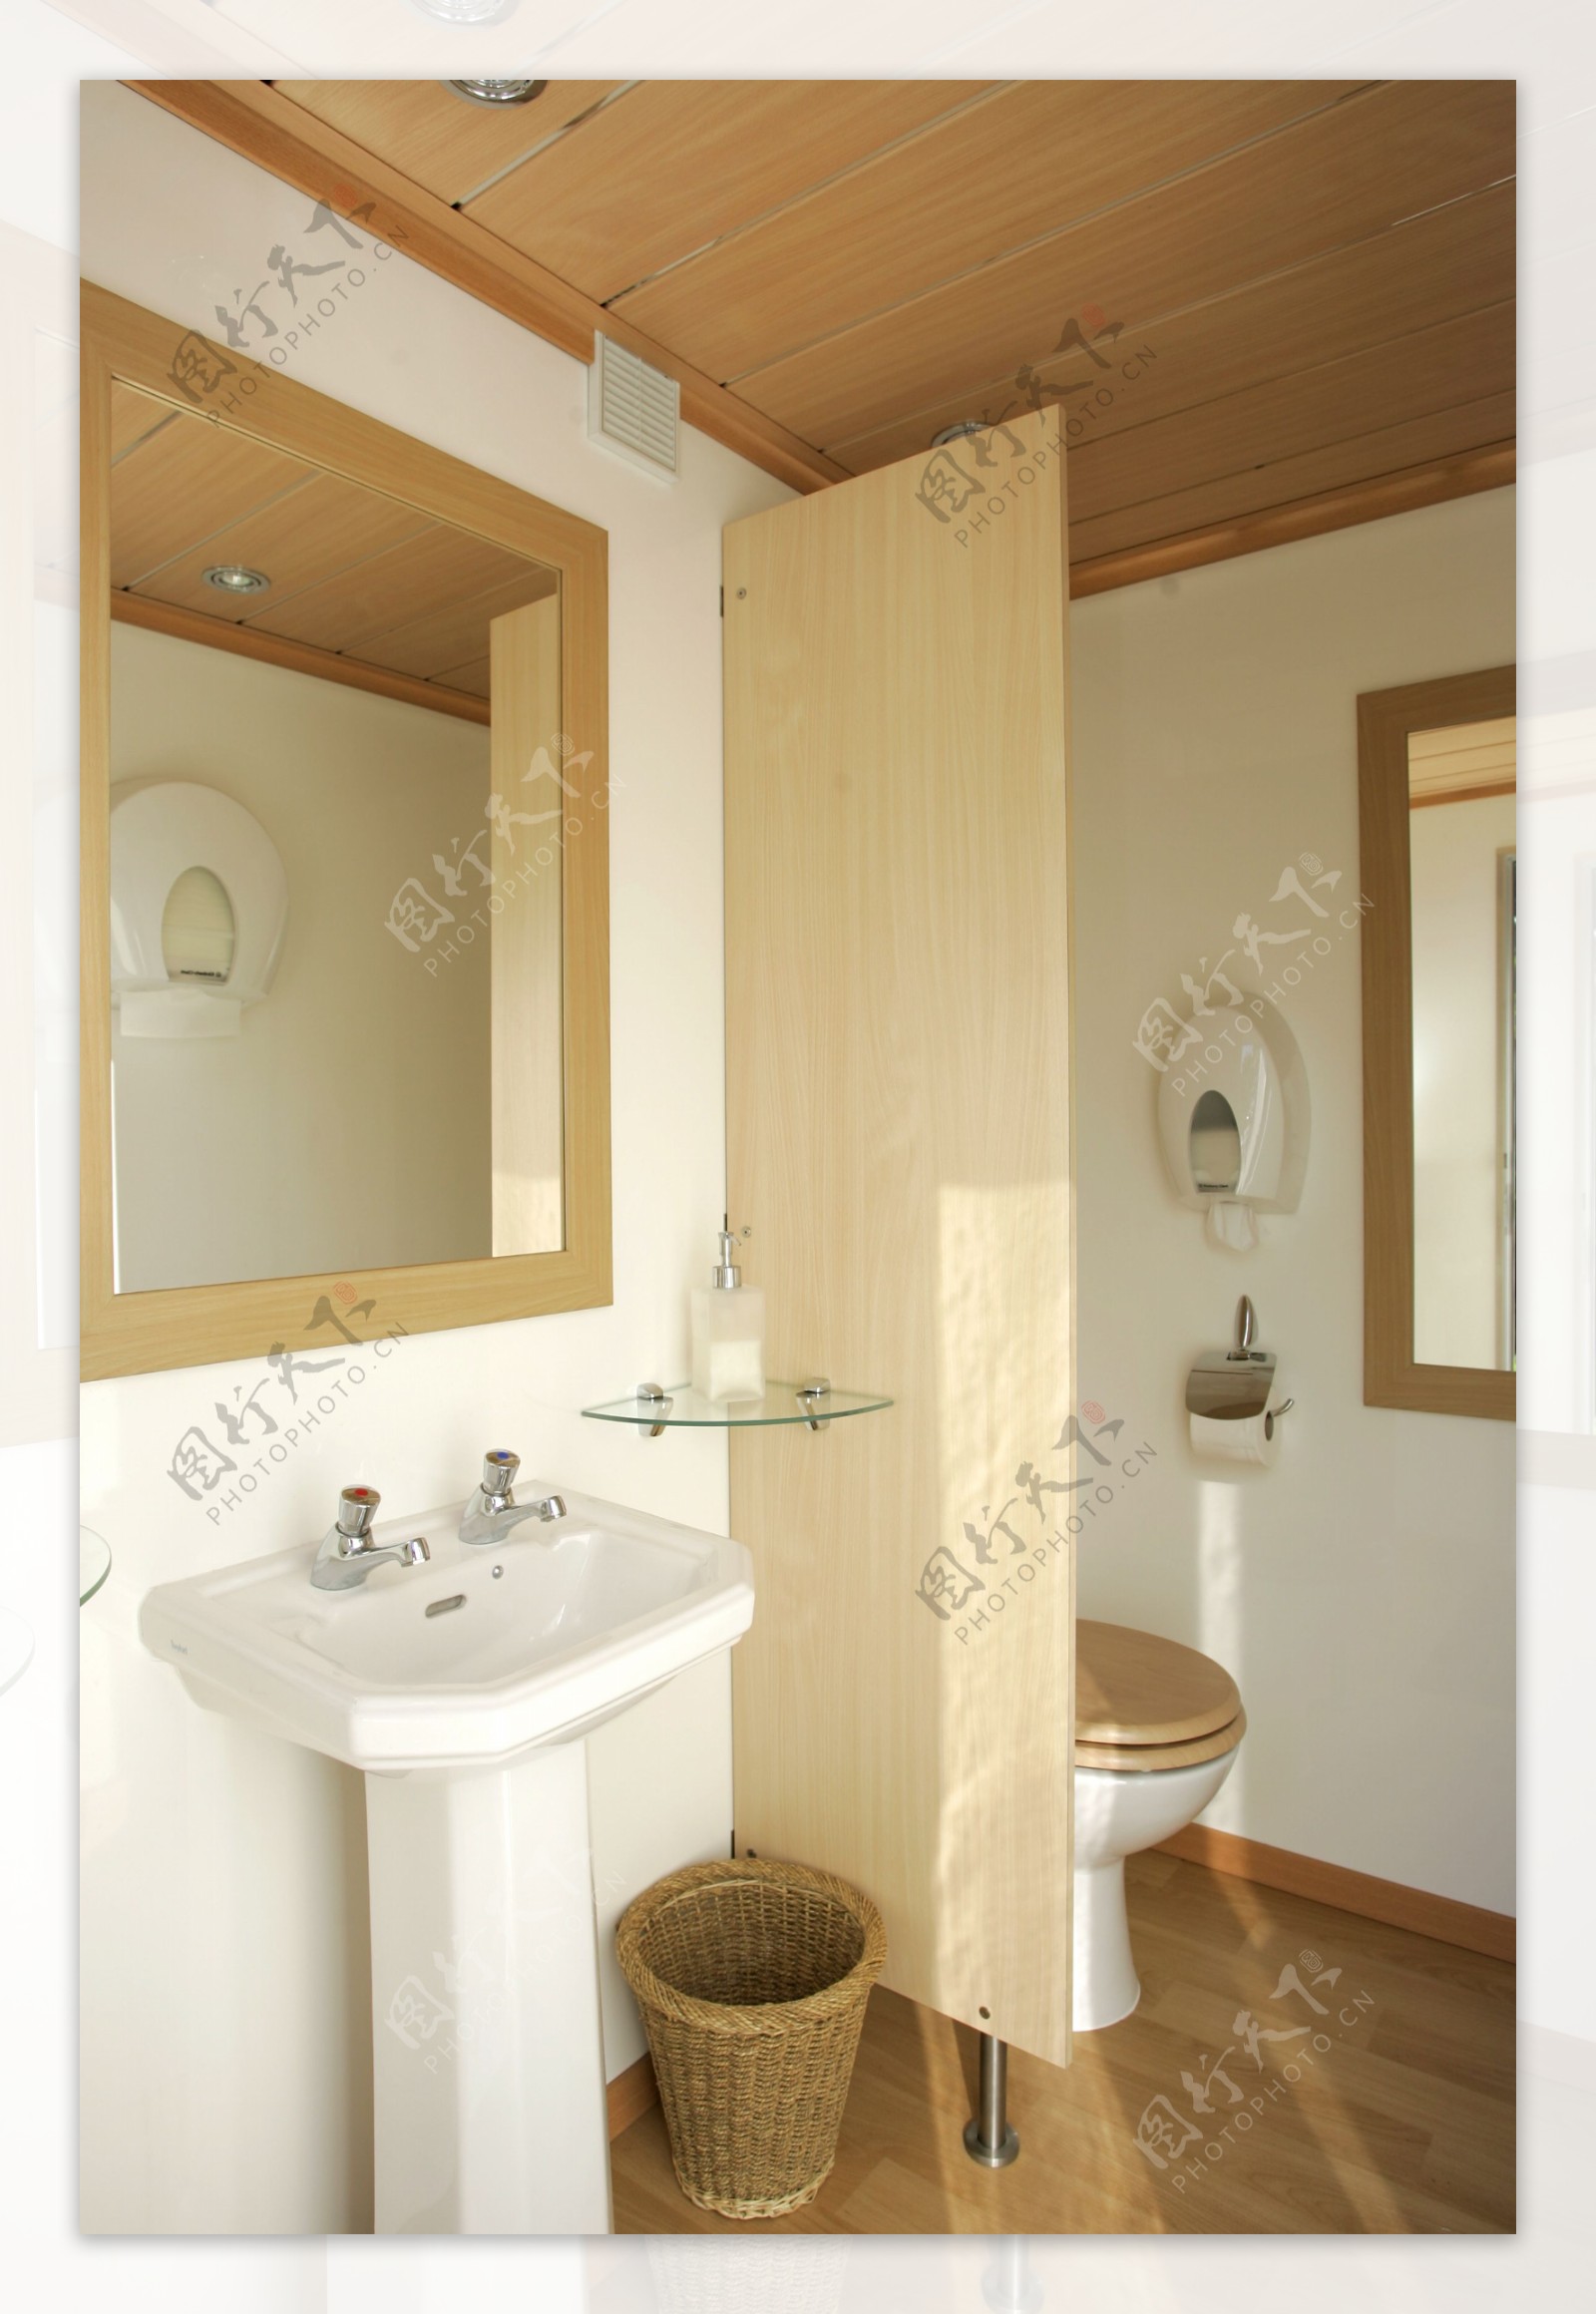 浴室装修效果图51图片